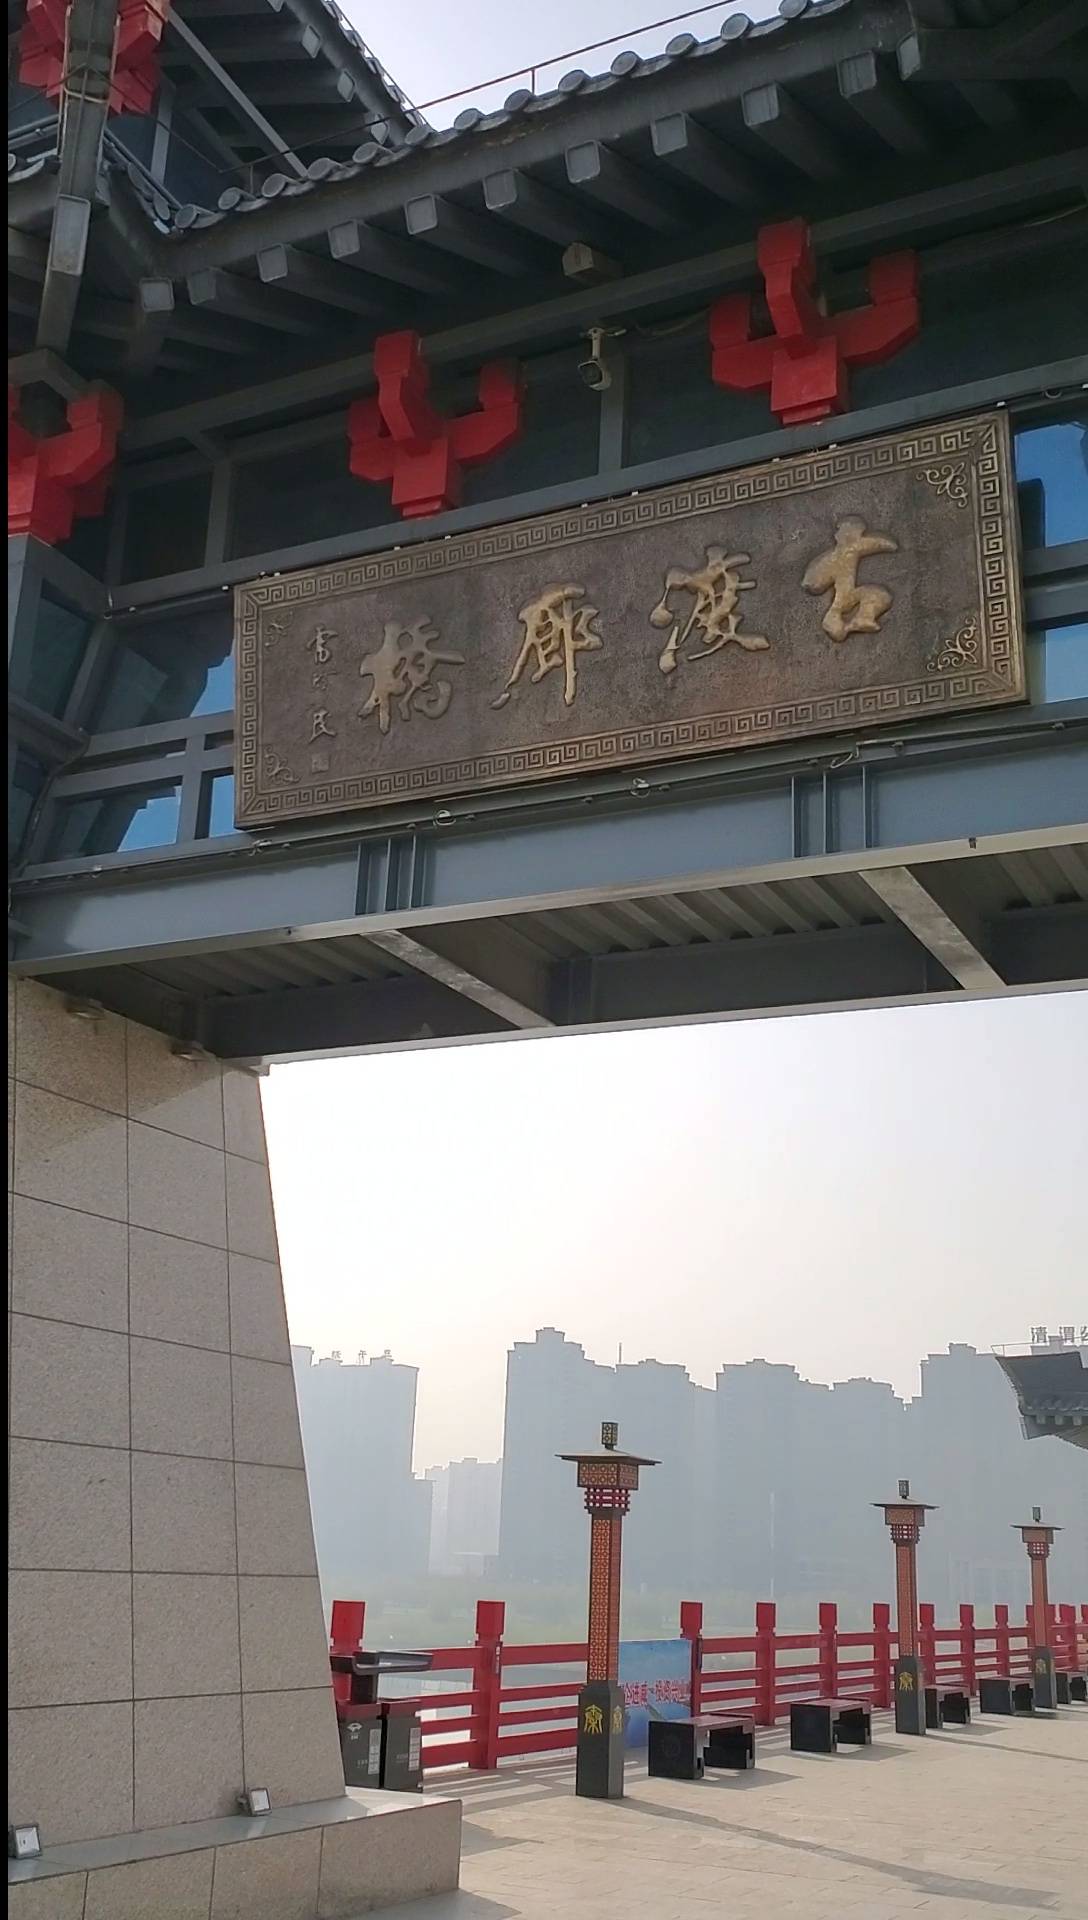 关中八景“咸阳古渡几千年”——咸阳古渡廊桥